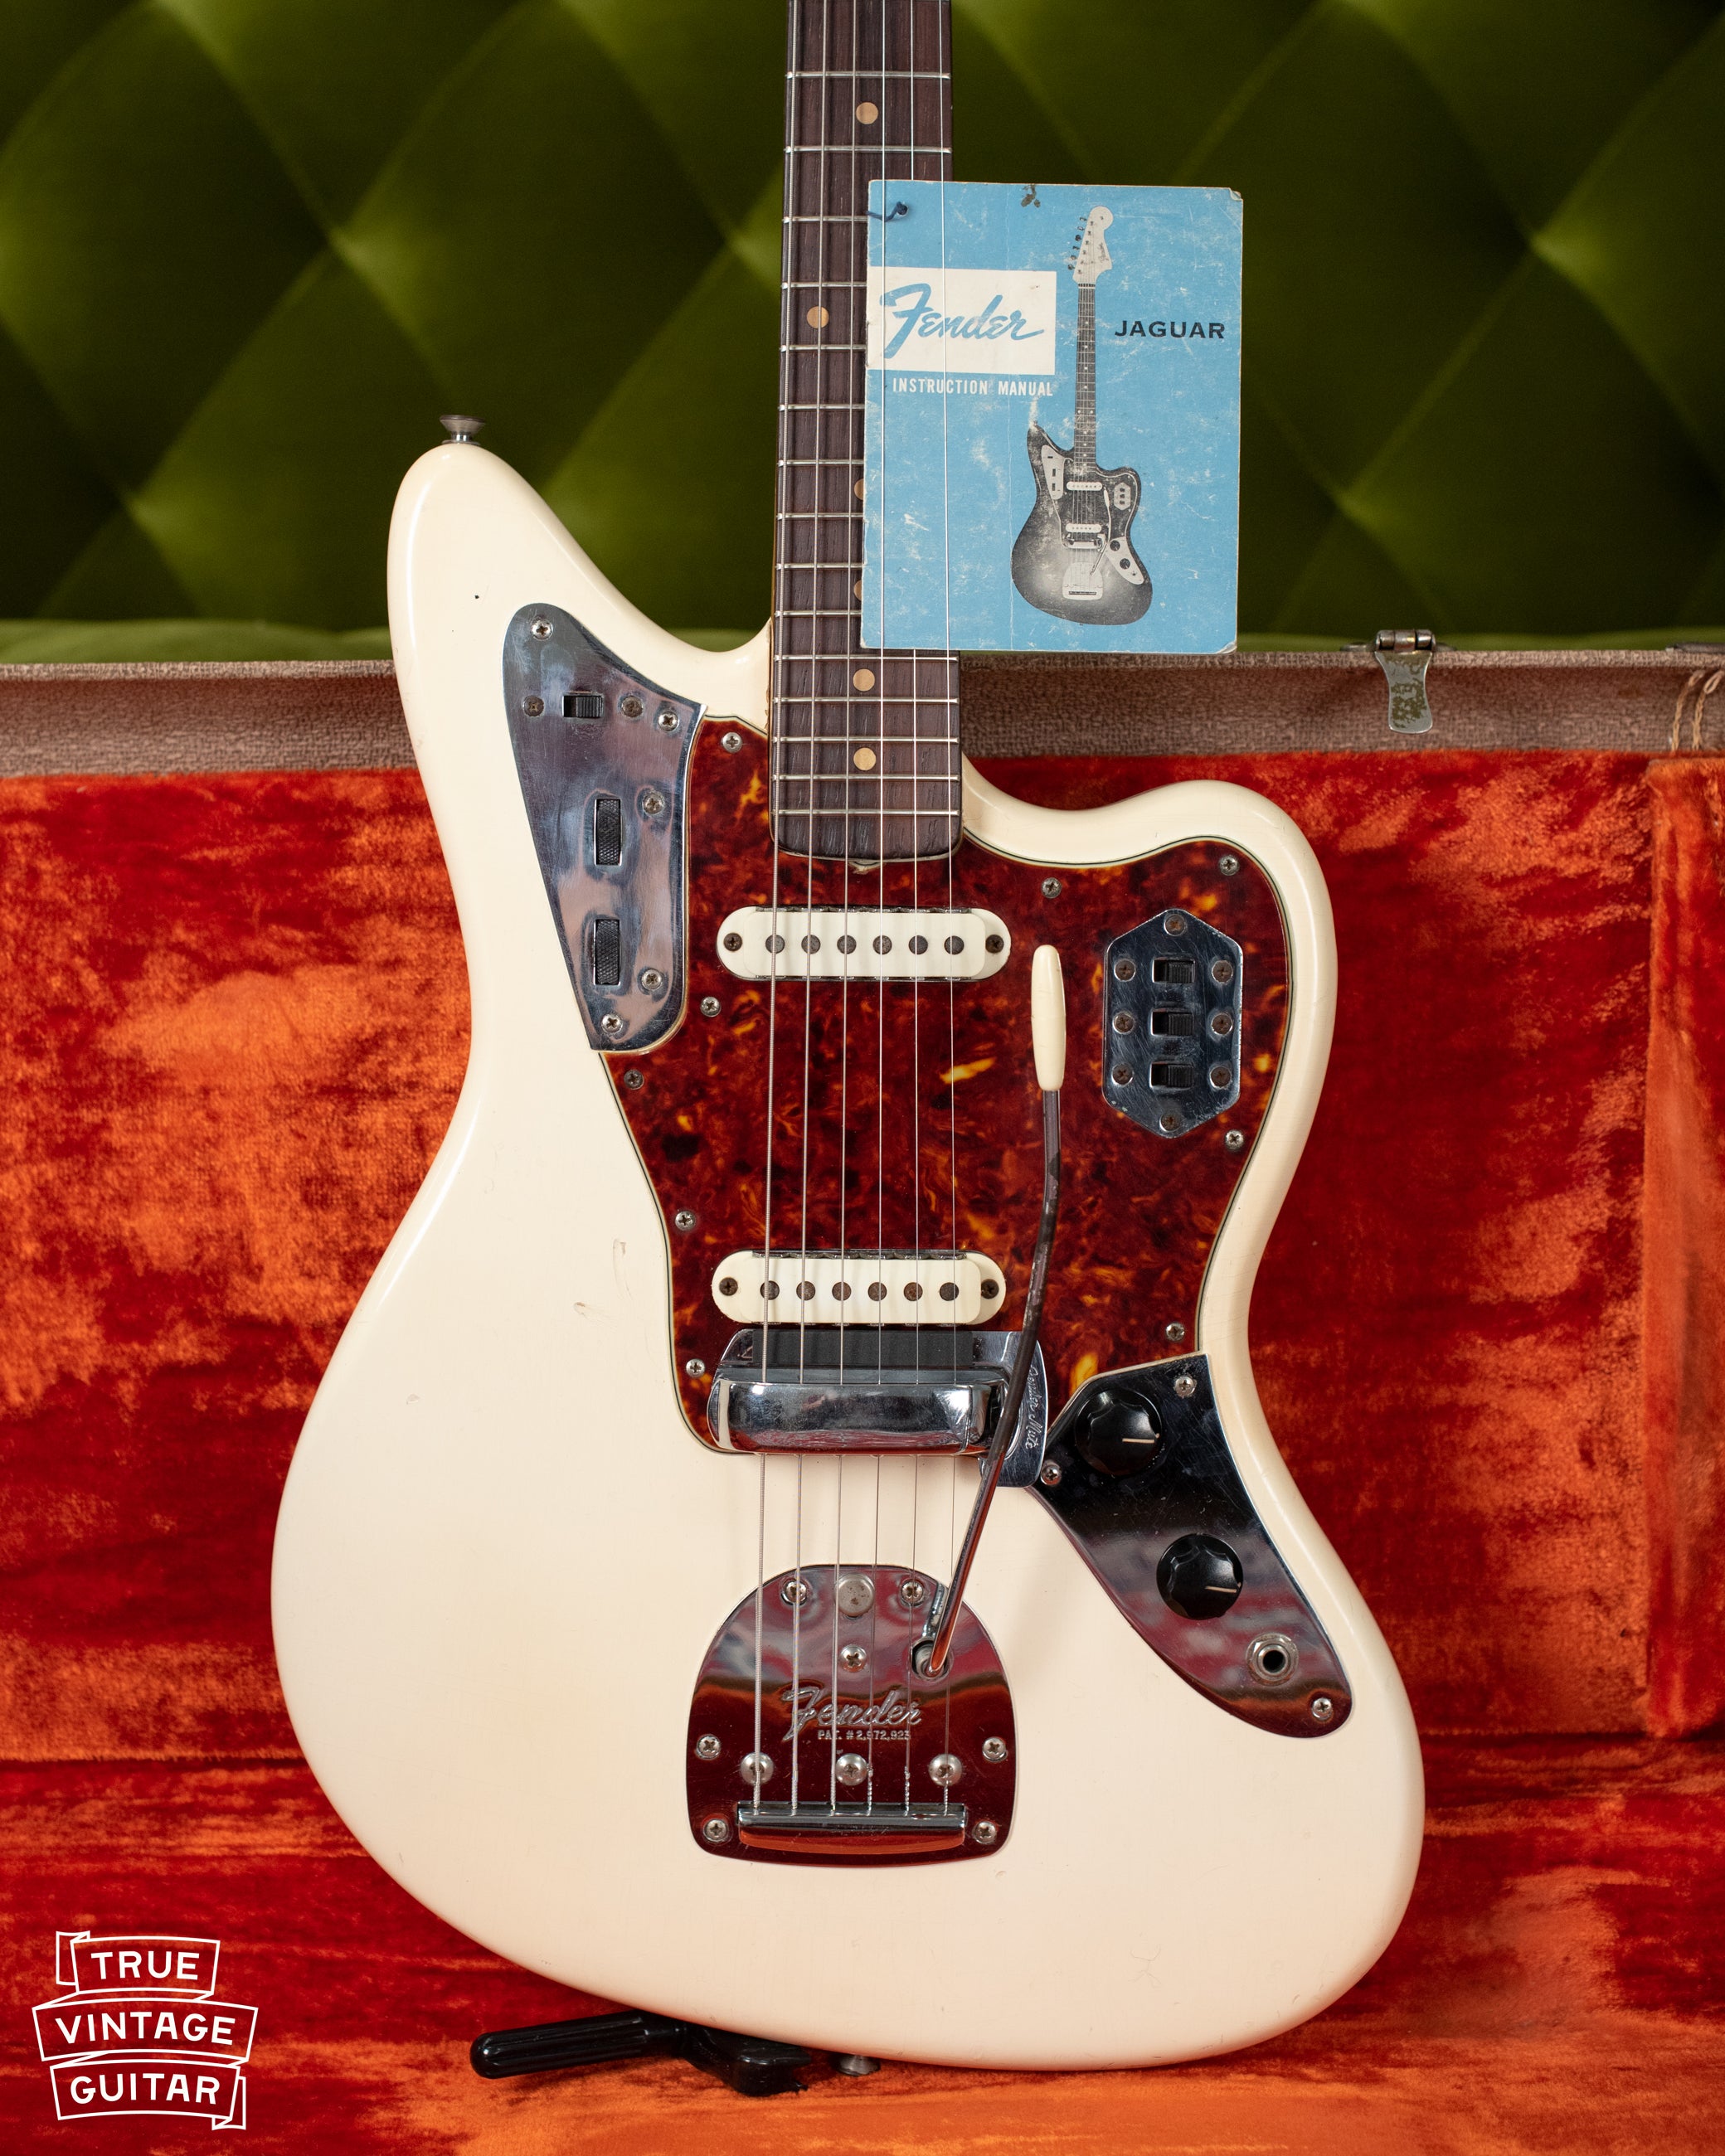 1962 Fender Jaguar Olympic White guitar